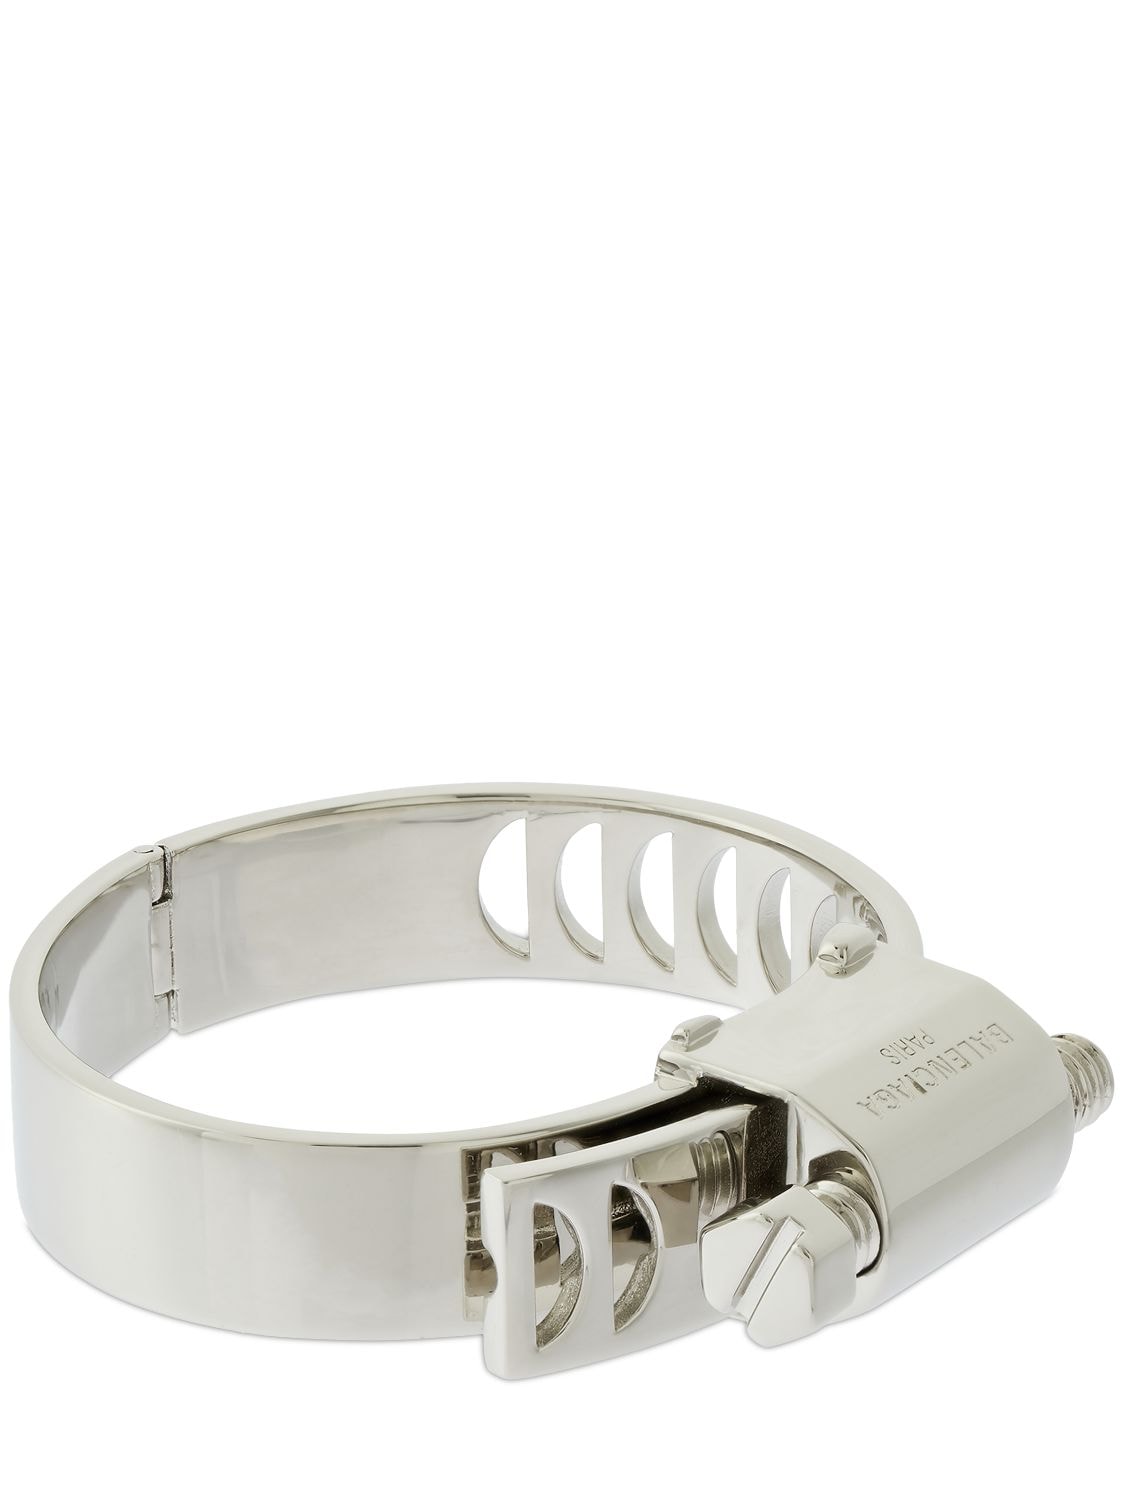 Shop Balenciaga Tool Bracelet